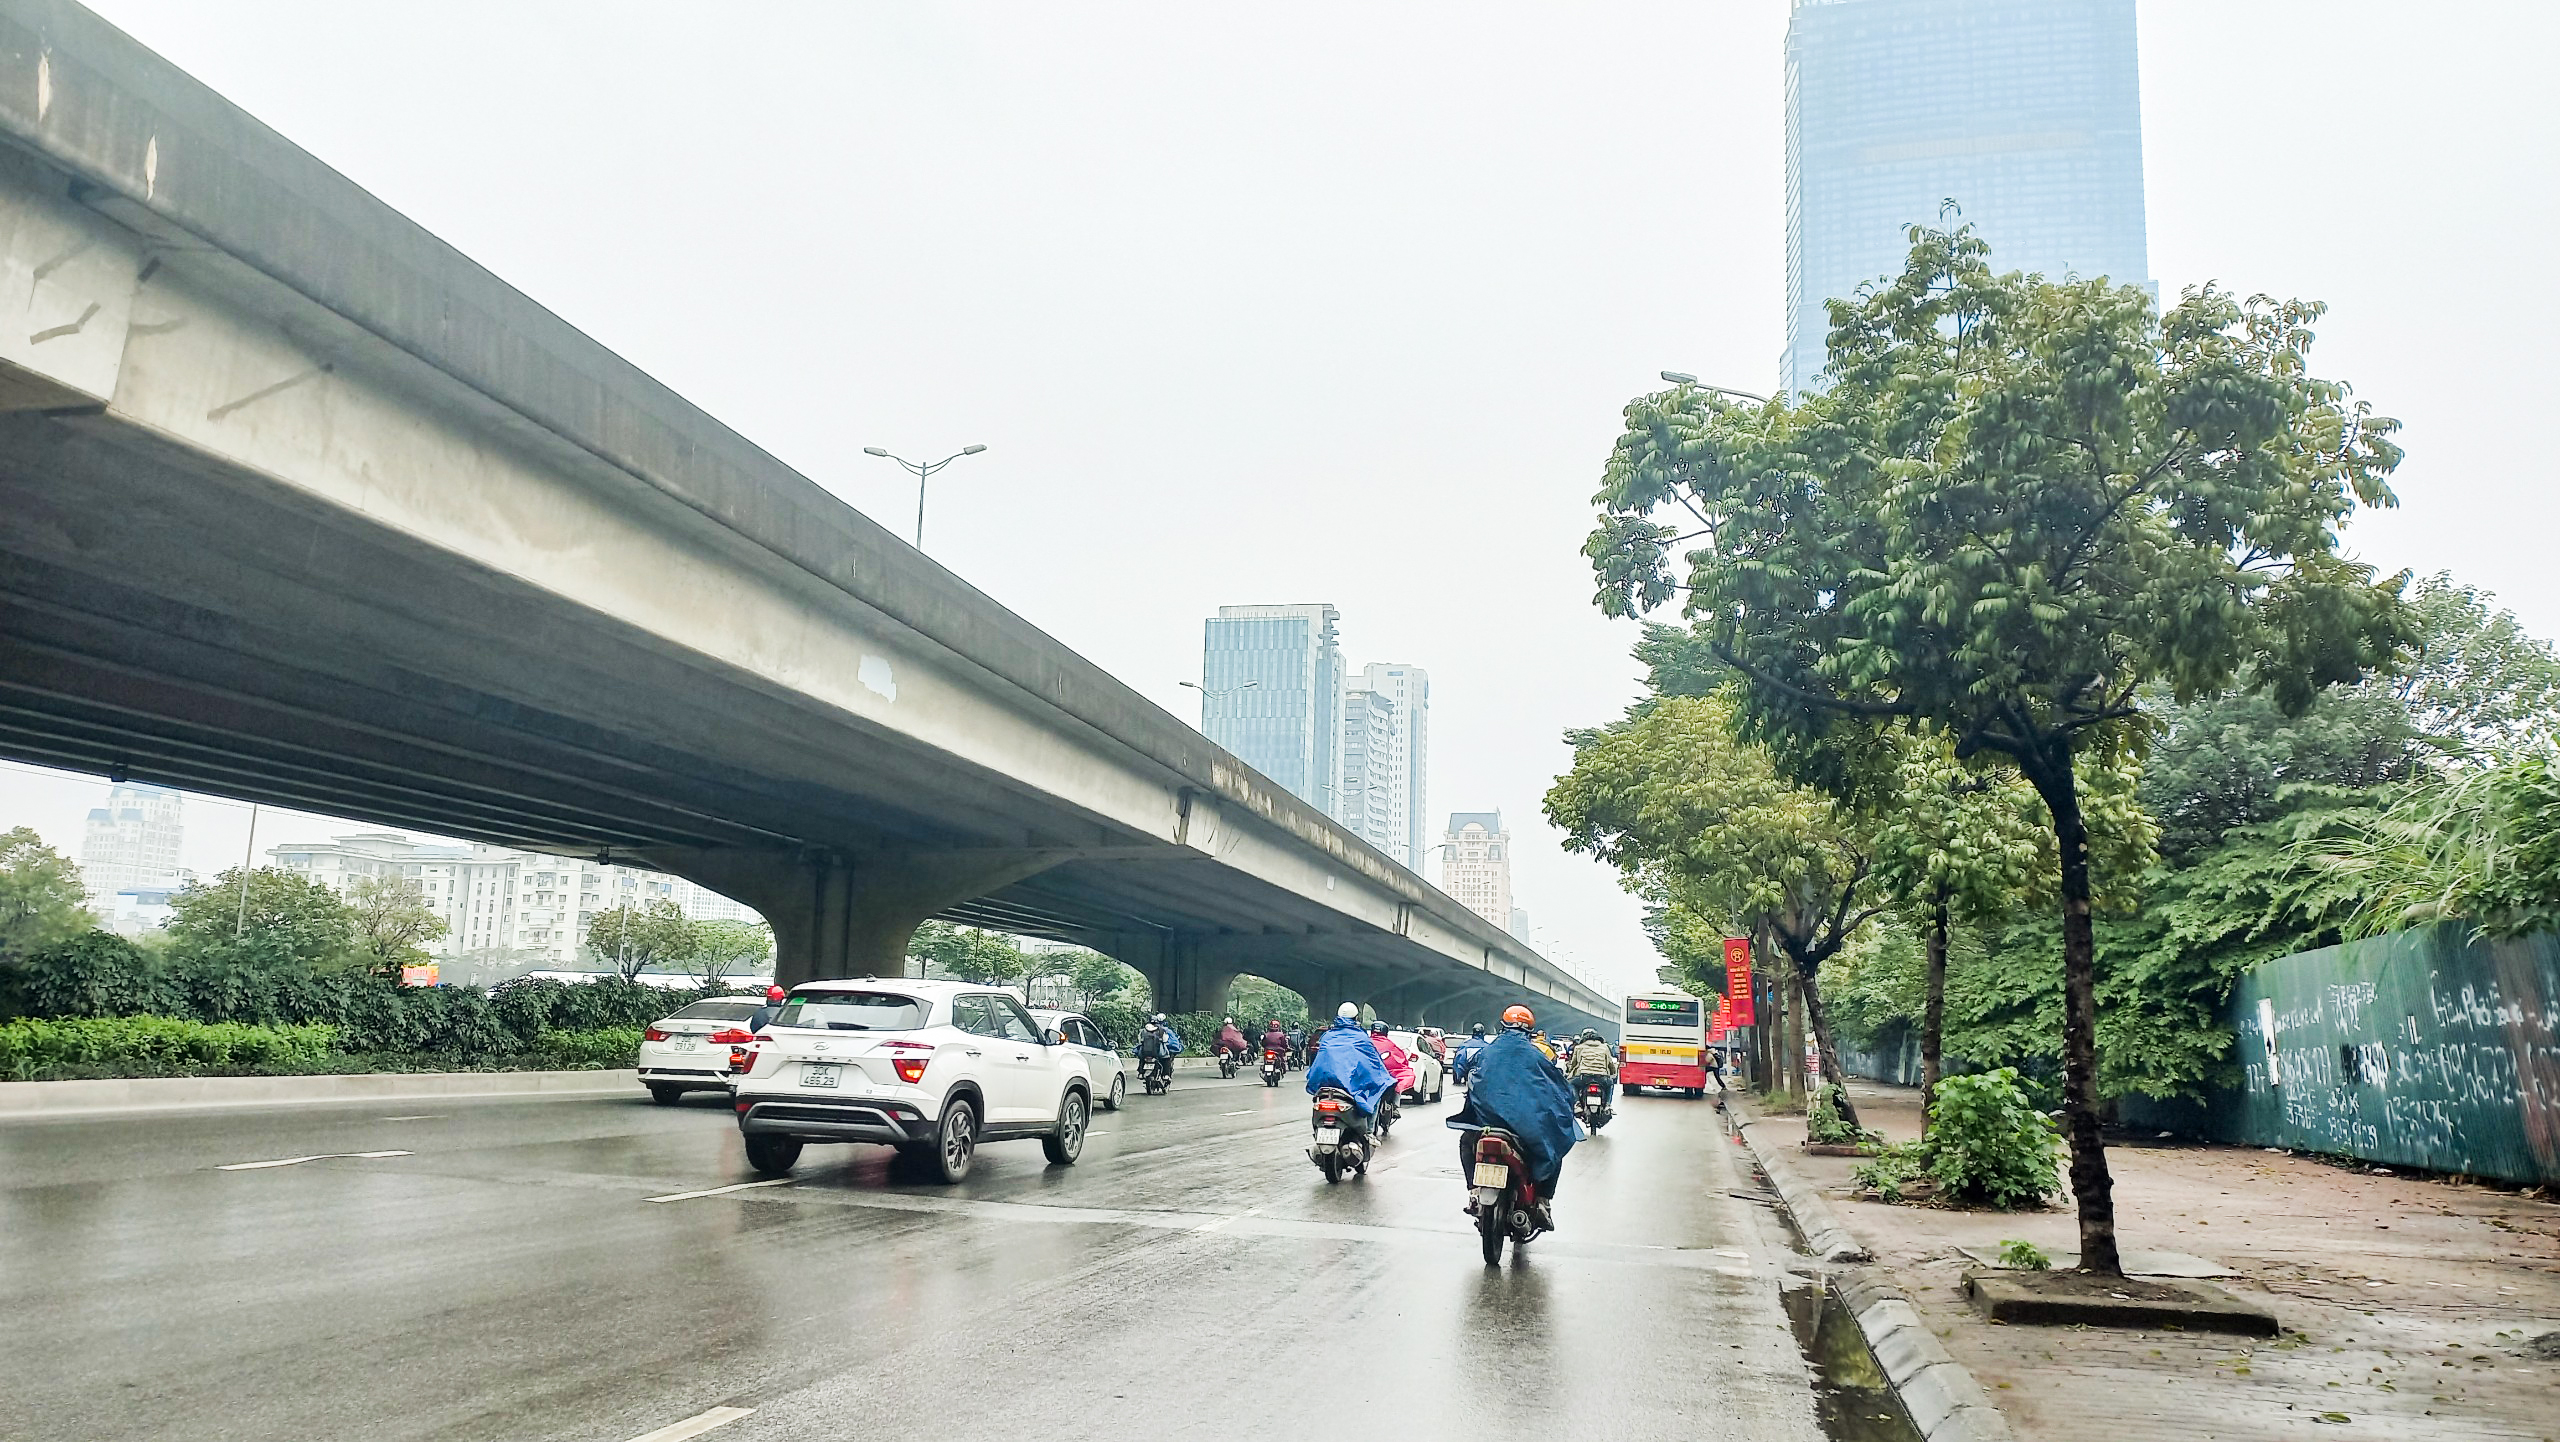 公共機関や商業施設が集まる道路<br>ファムフン（Pham Hung）通り